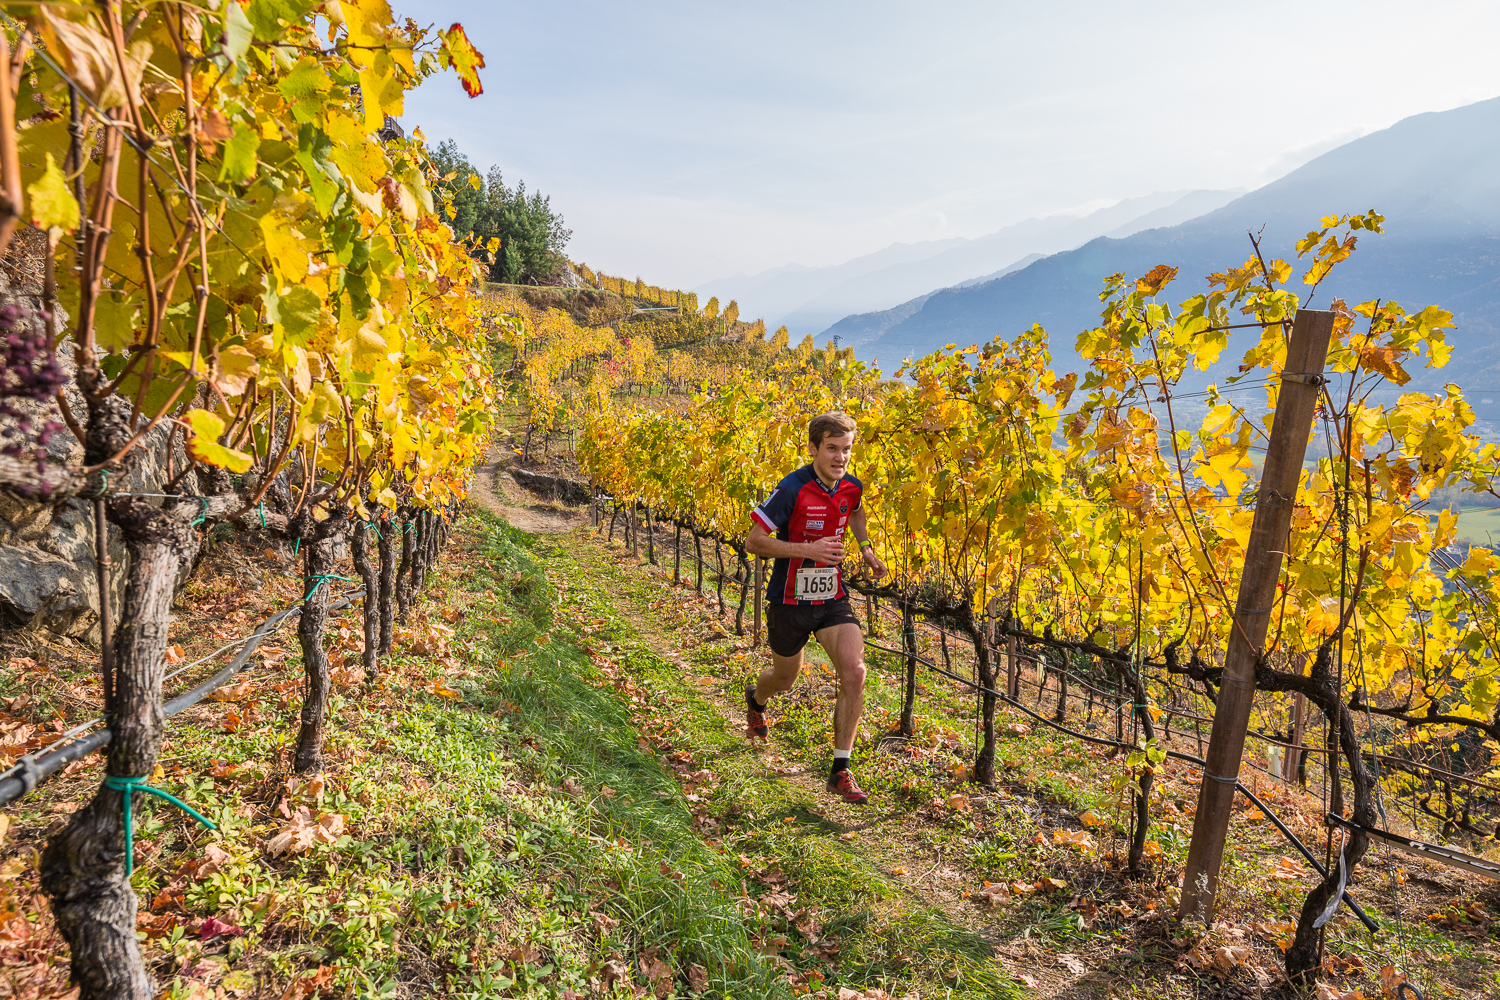 Valtellina wine trail, edizione 2018 by night